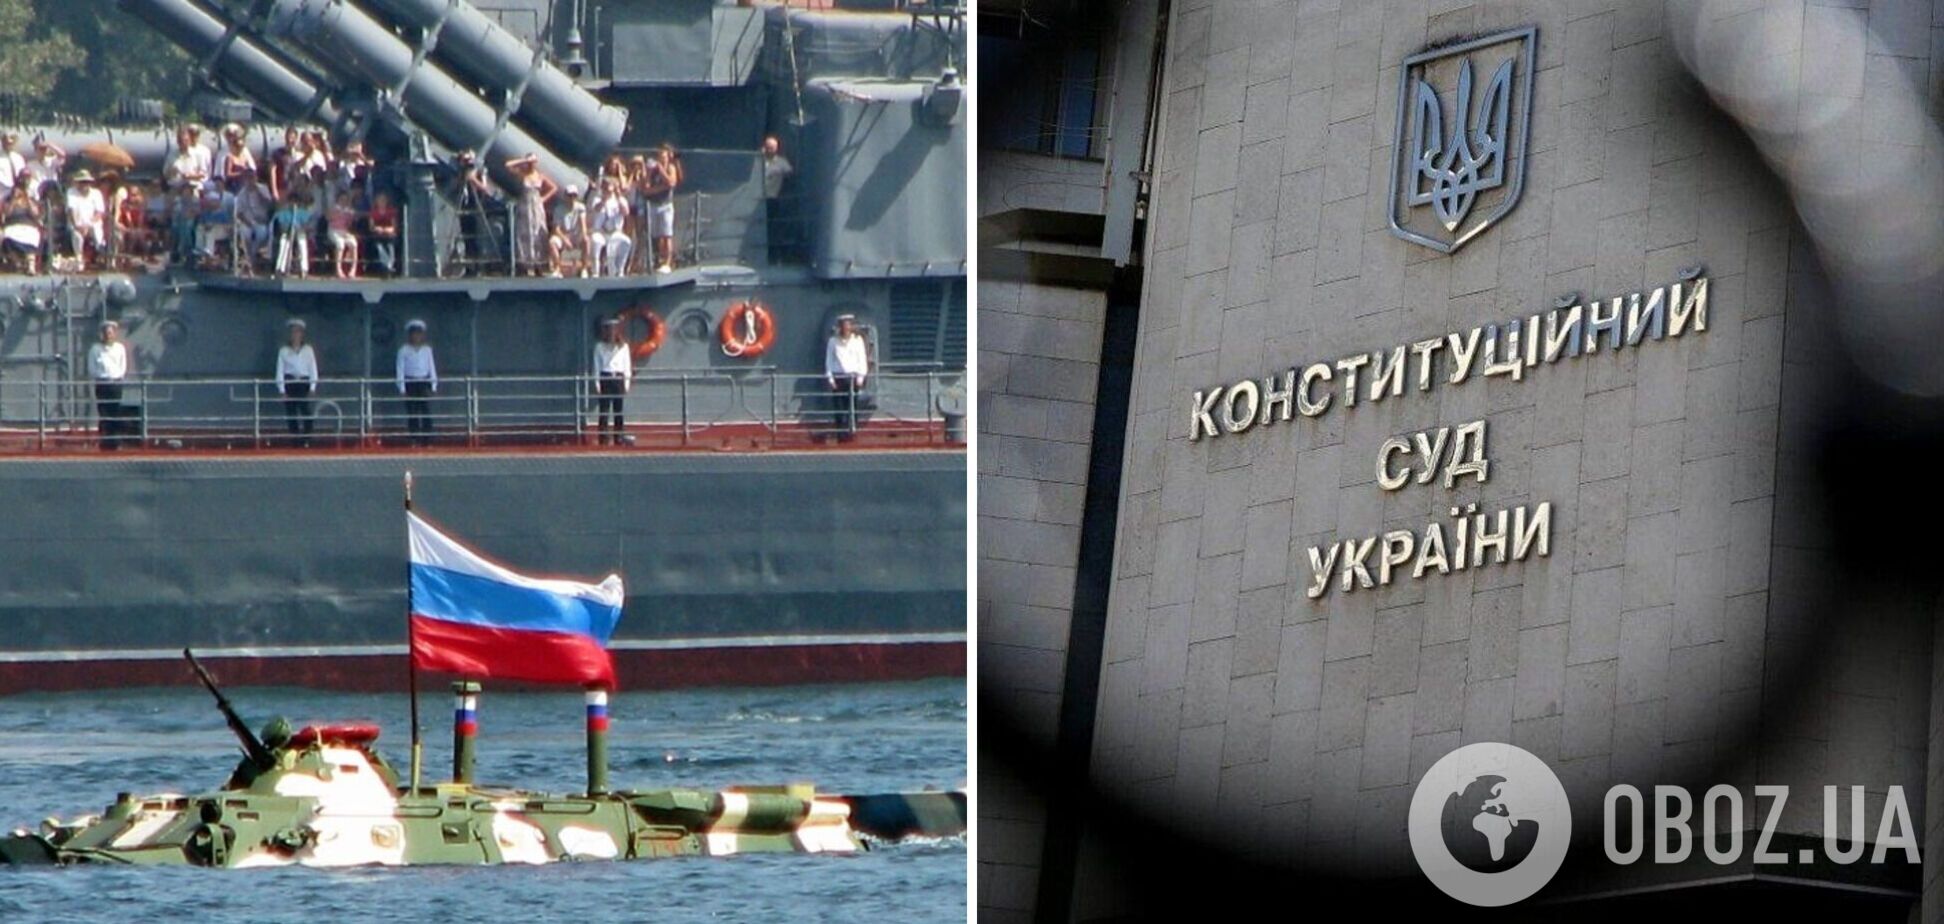 Украина готовится расторгнуть соглашение о размещении Черноморского флота РФ в Крыму